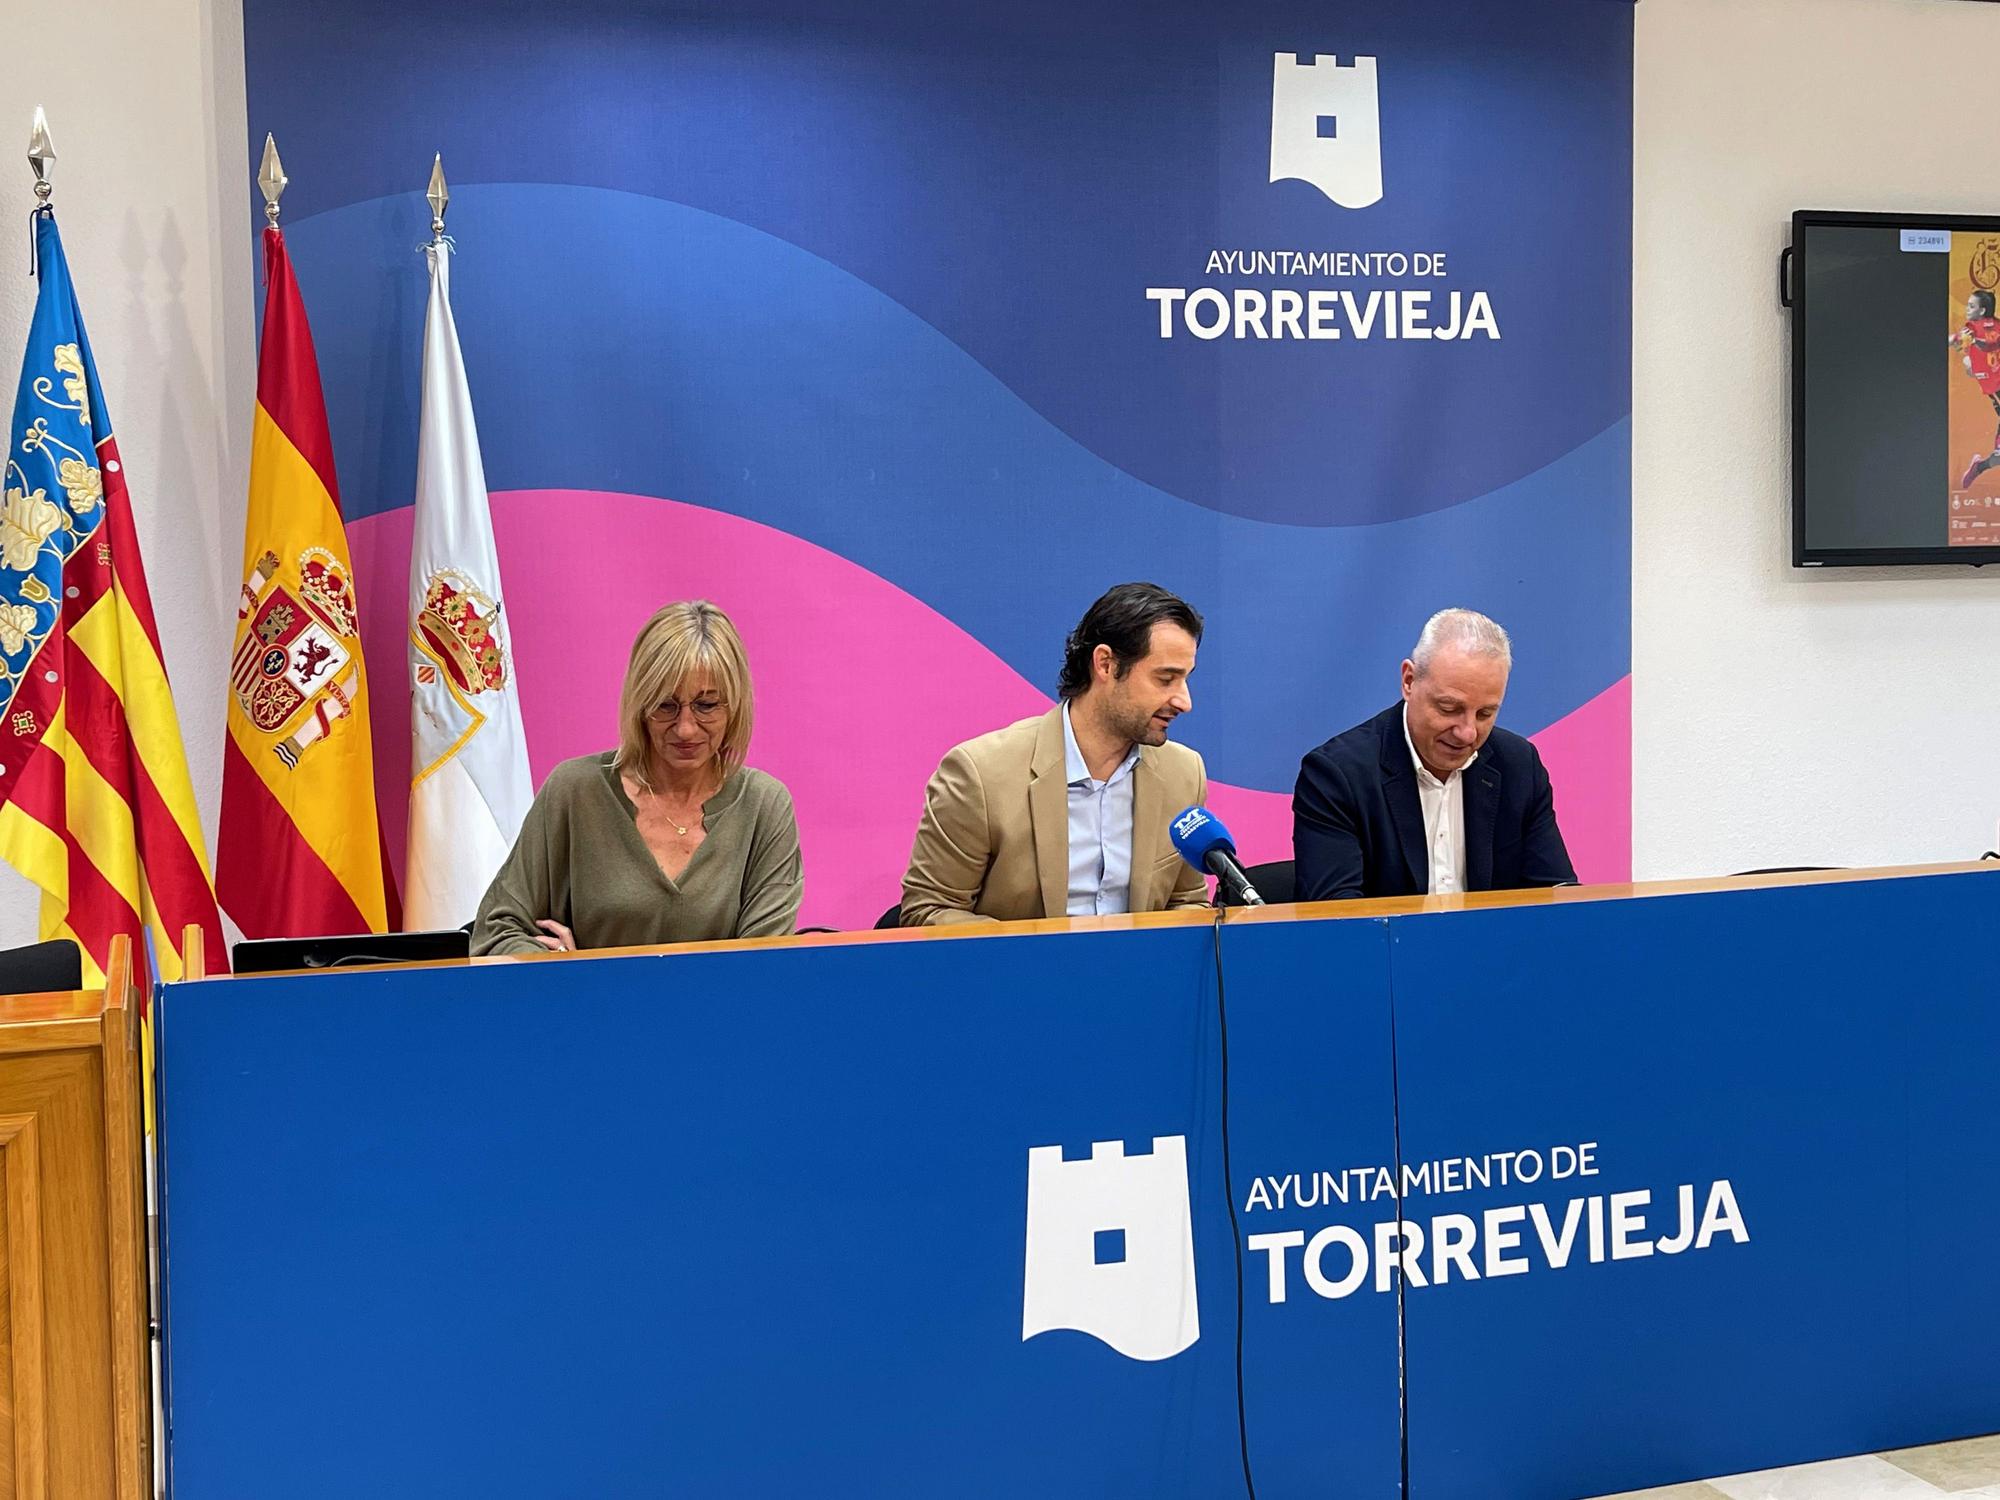 El TIE ha sido presentado de manera oficial este martes en salón de plenos del Ayuntamiento de Torrevieja.